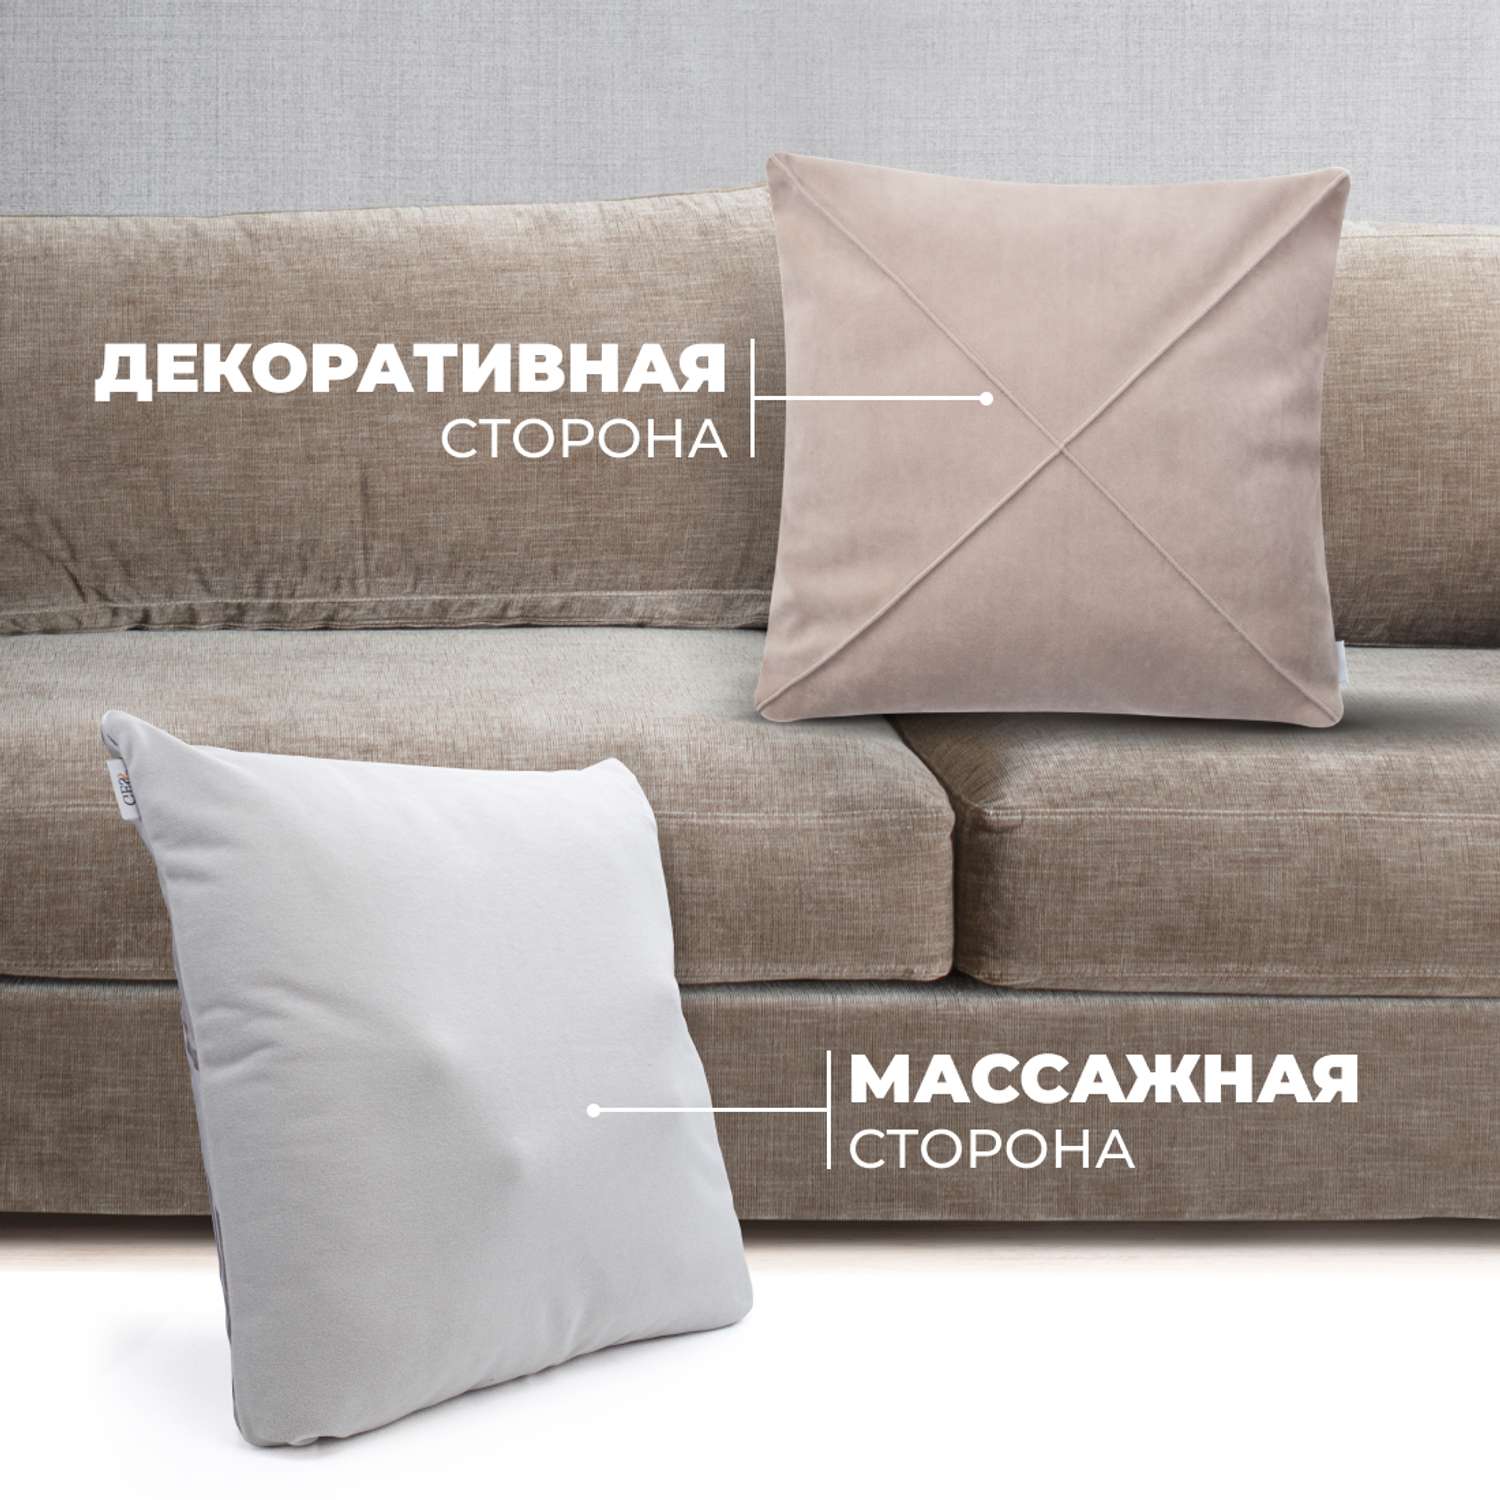 Массажная подушка для тела GESS Decora бежевая в комплекте с декоративной подушкой 1шт и наволочками 2шт - фото 2